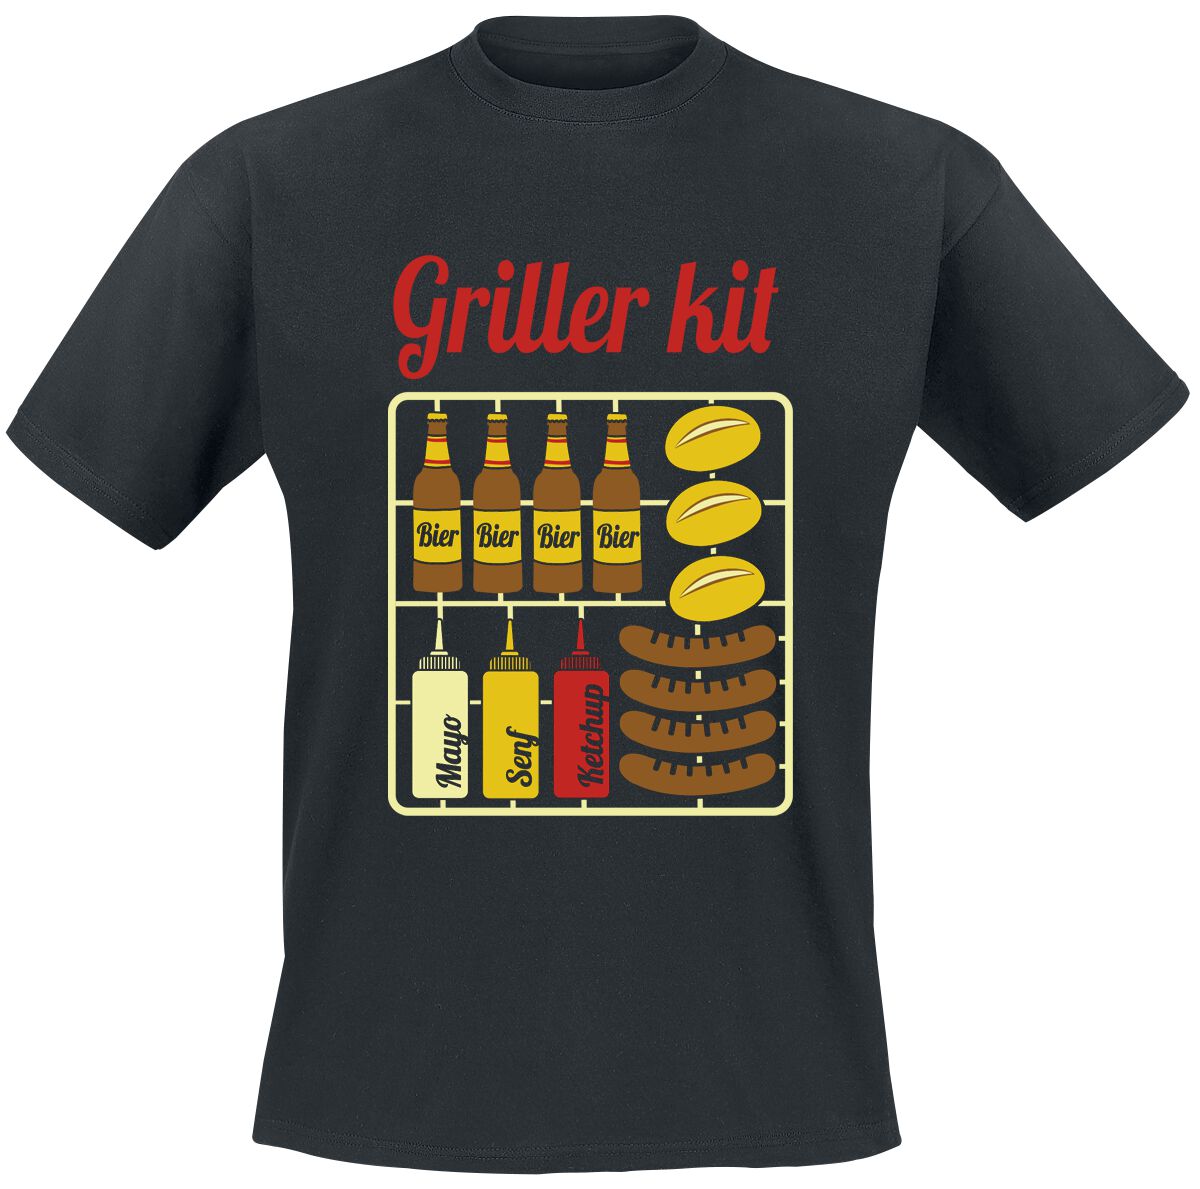 Food Griller Kit T-Shirt black